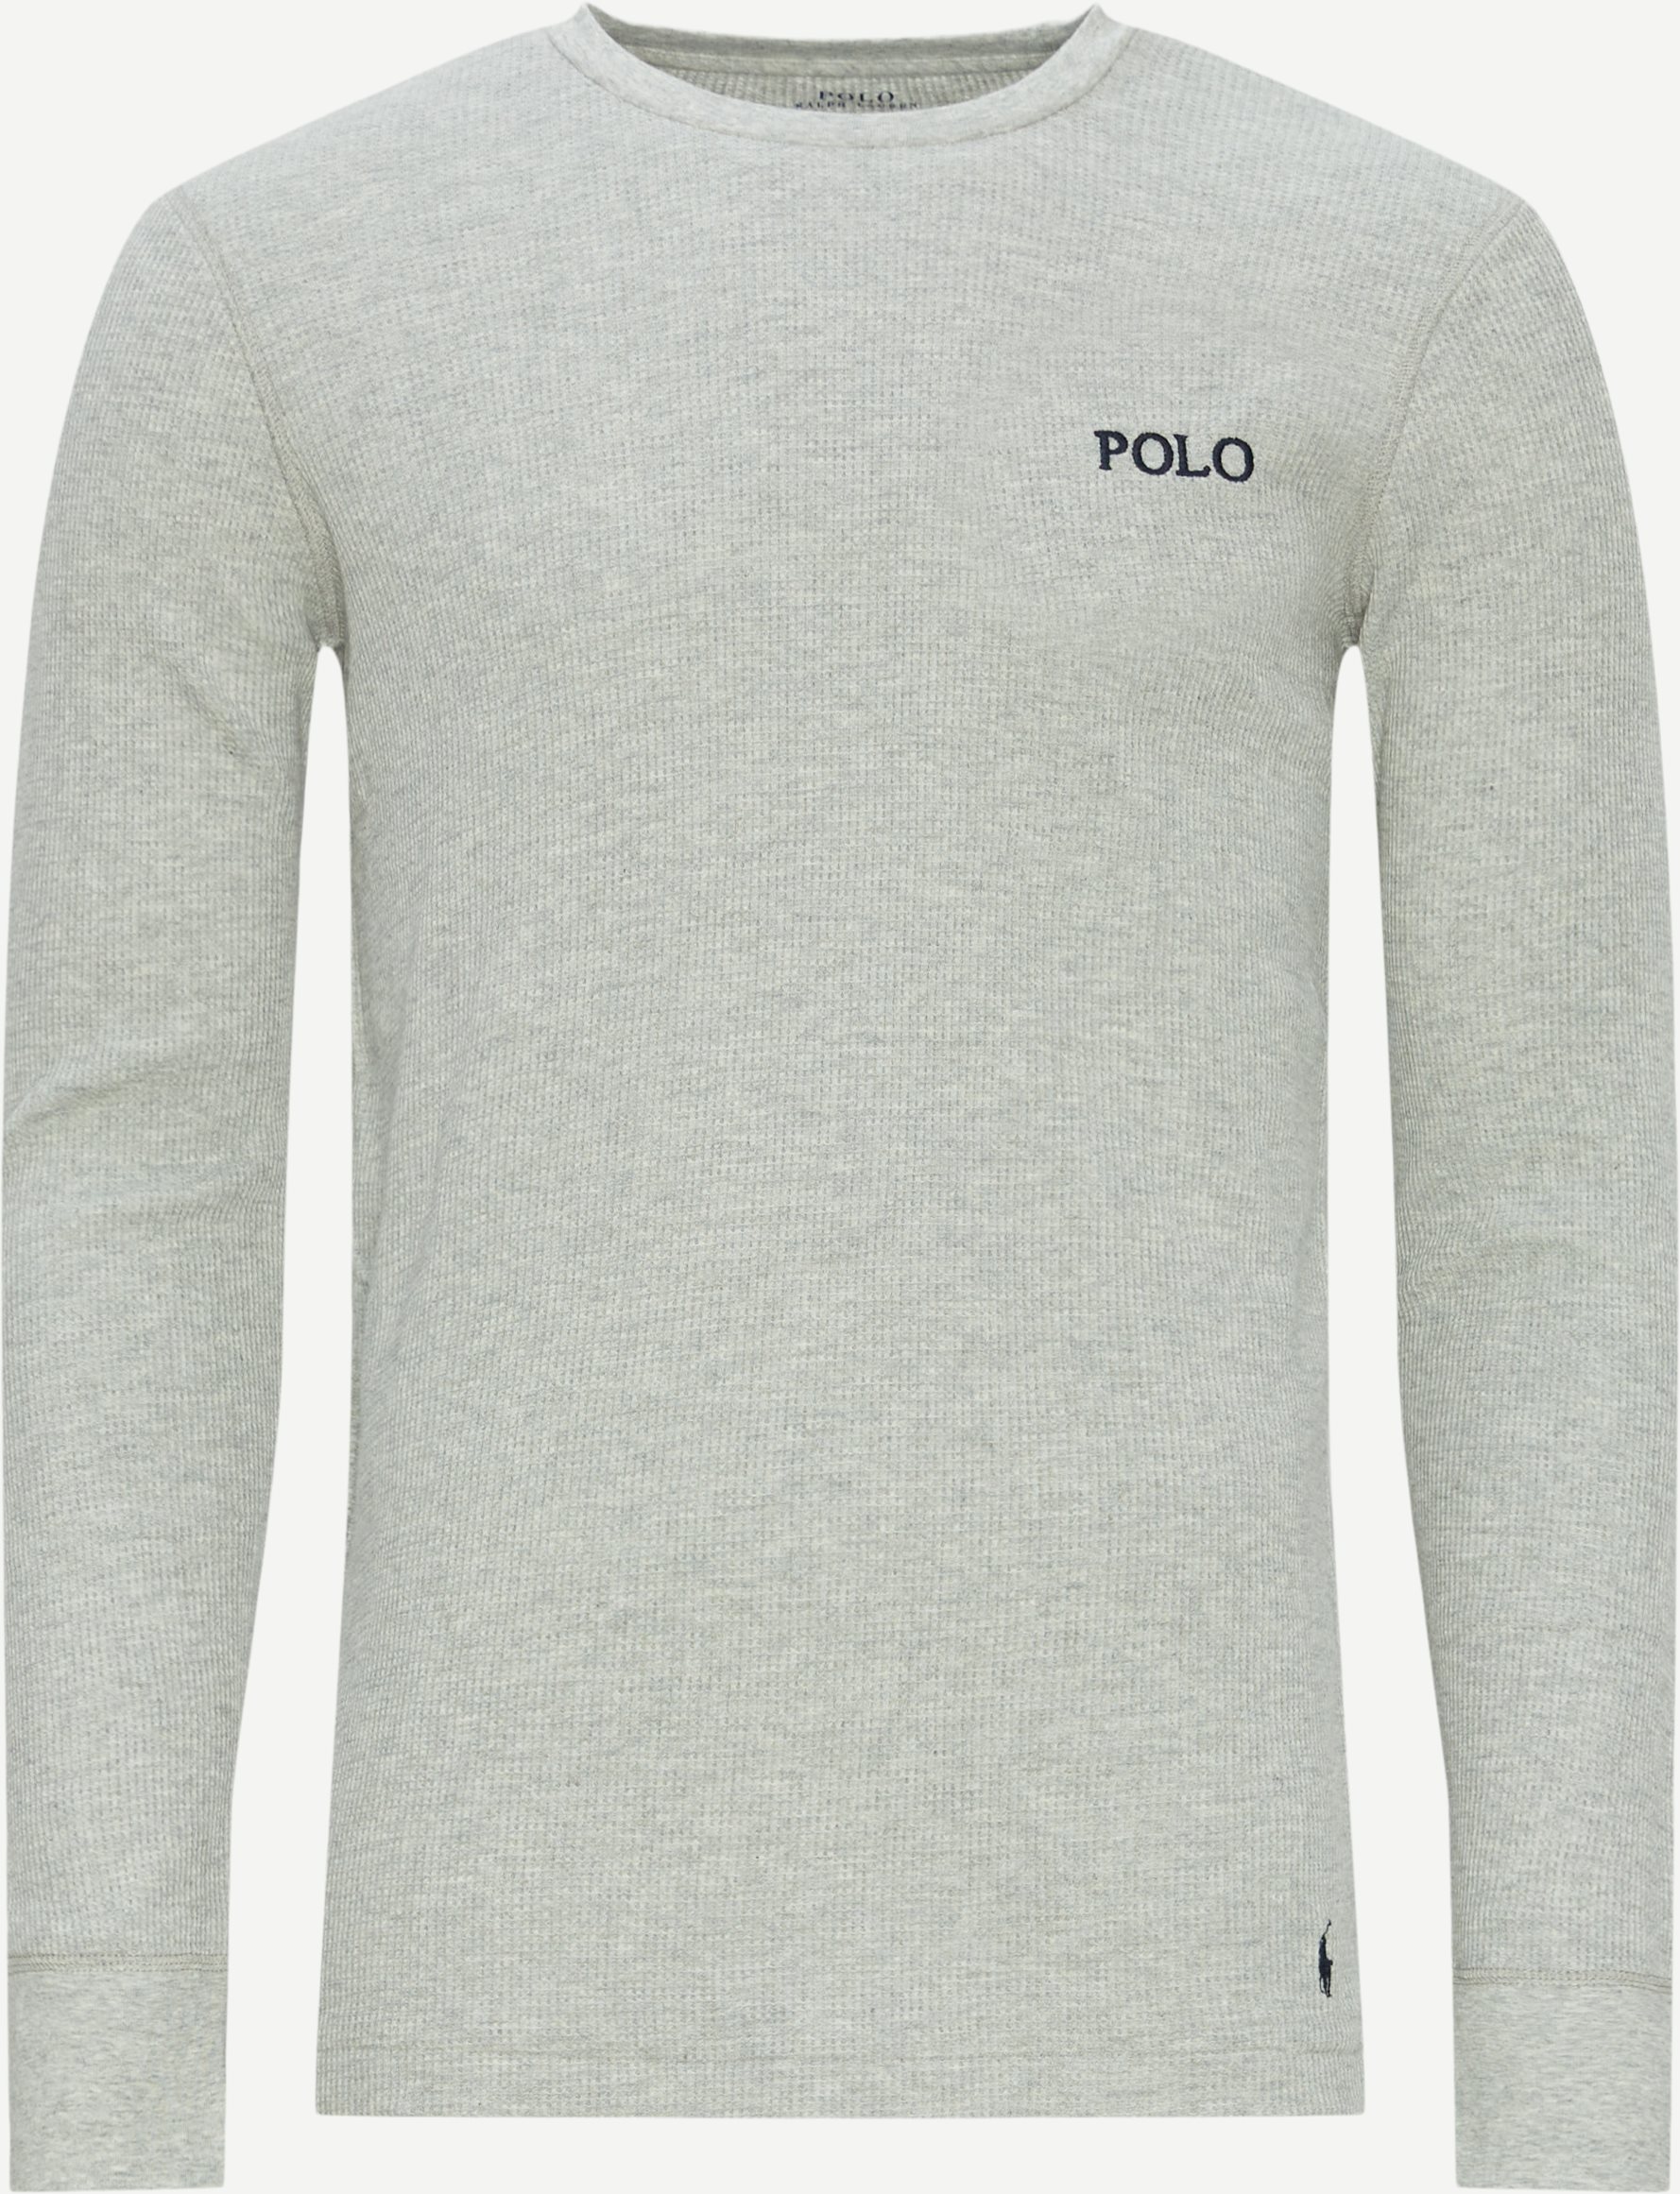 Polo Ralph Lauren T-shirts 714899615 LS CREW SLEEP TOP Grå